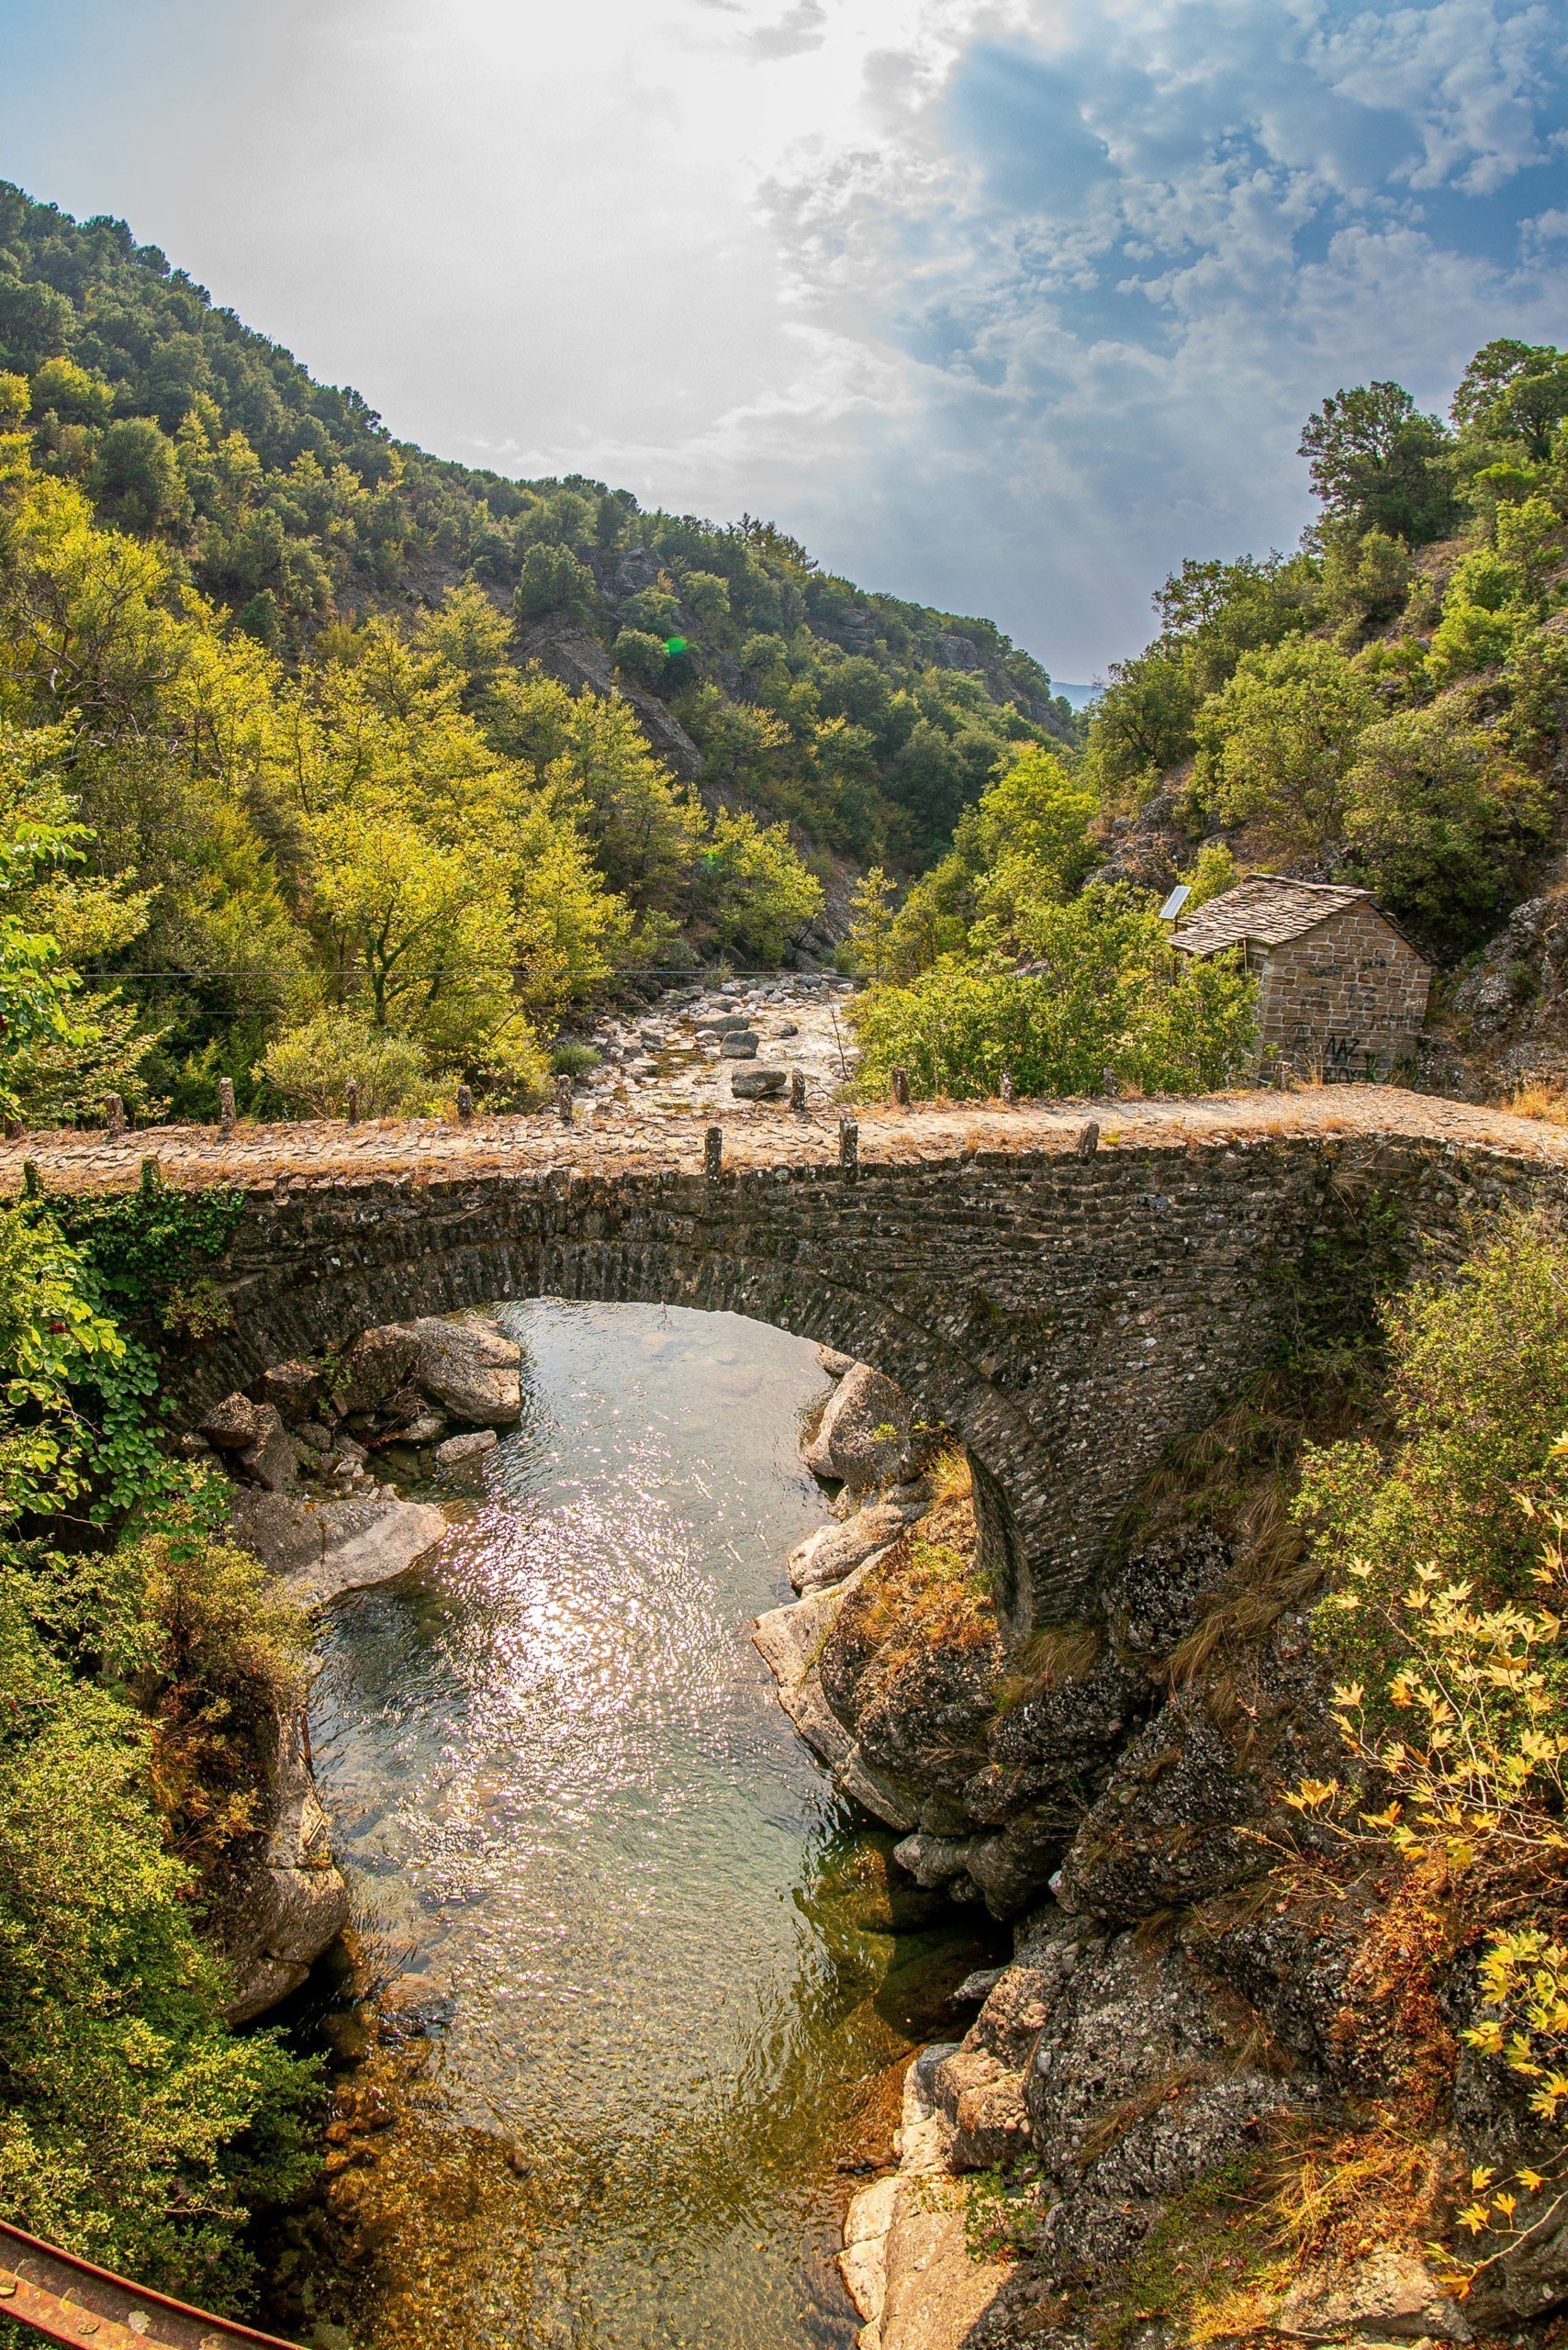 Μπάρος: Το θρυλικό πέρασμα – Η απόλυτη ορεινή διαδρομή στην Ελλάδα που αξίζει να ζήσετε έστω μια φορά